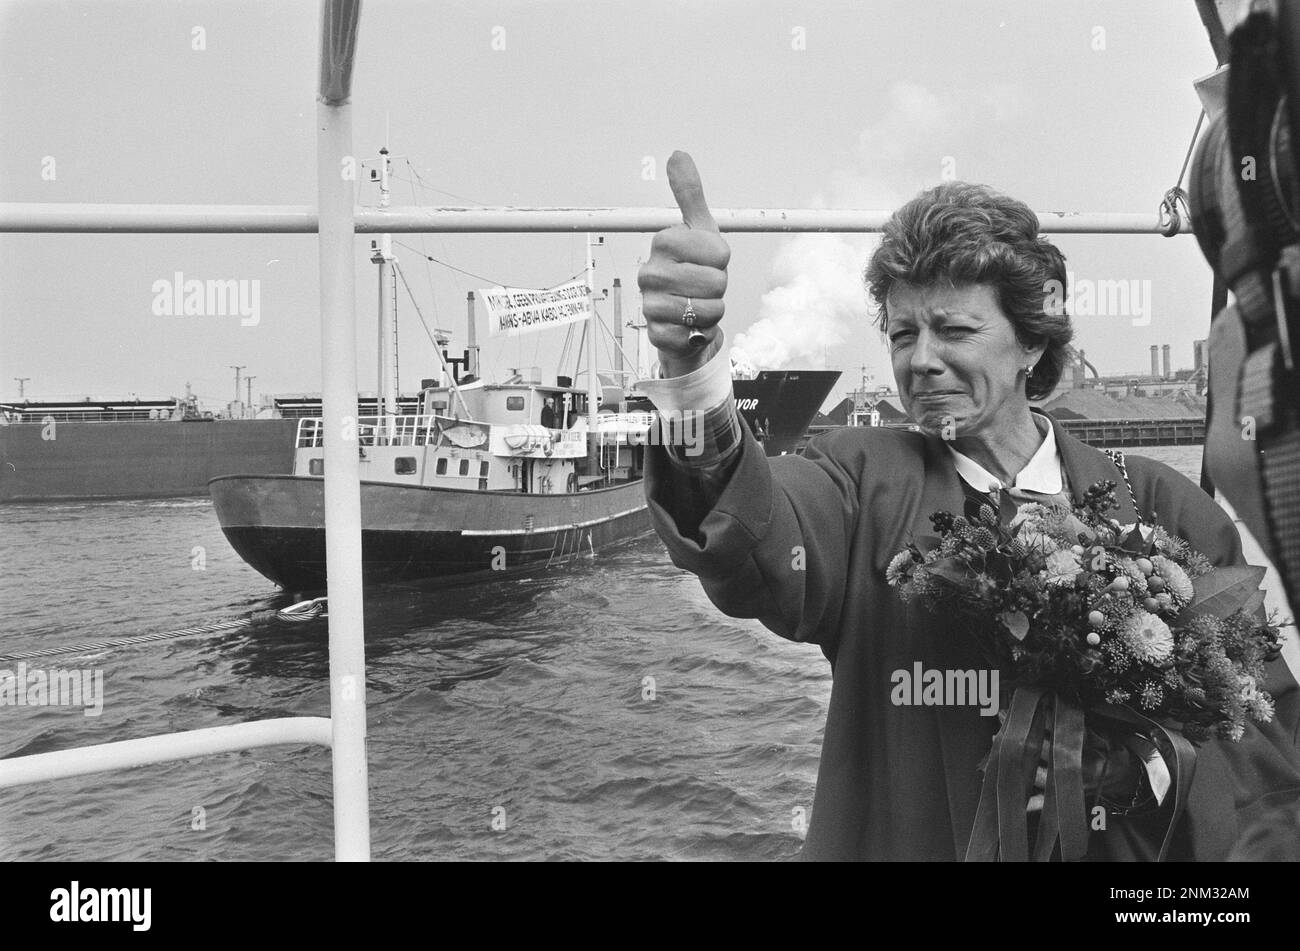 Nuovo canale IJ IJmuiden aperto; il ministro Smit Kroes alza il pollice ca. 1985 Foto Stock